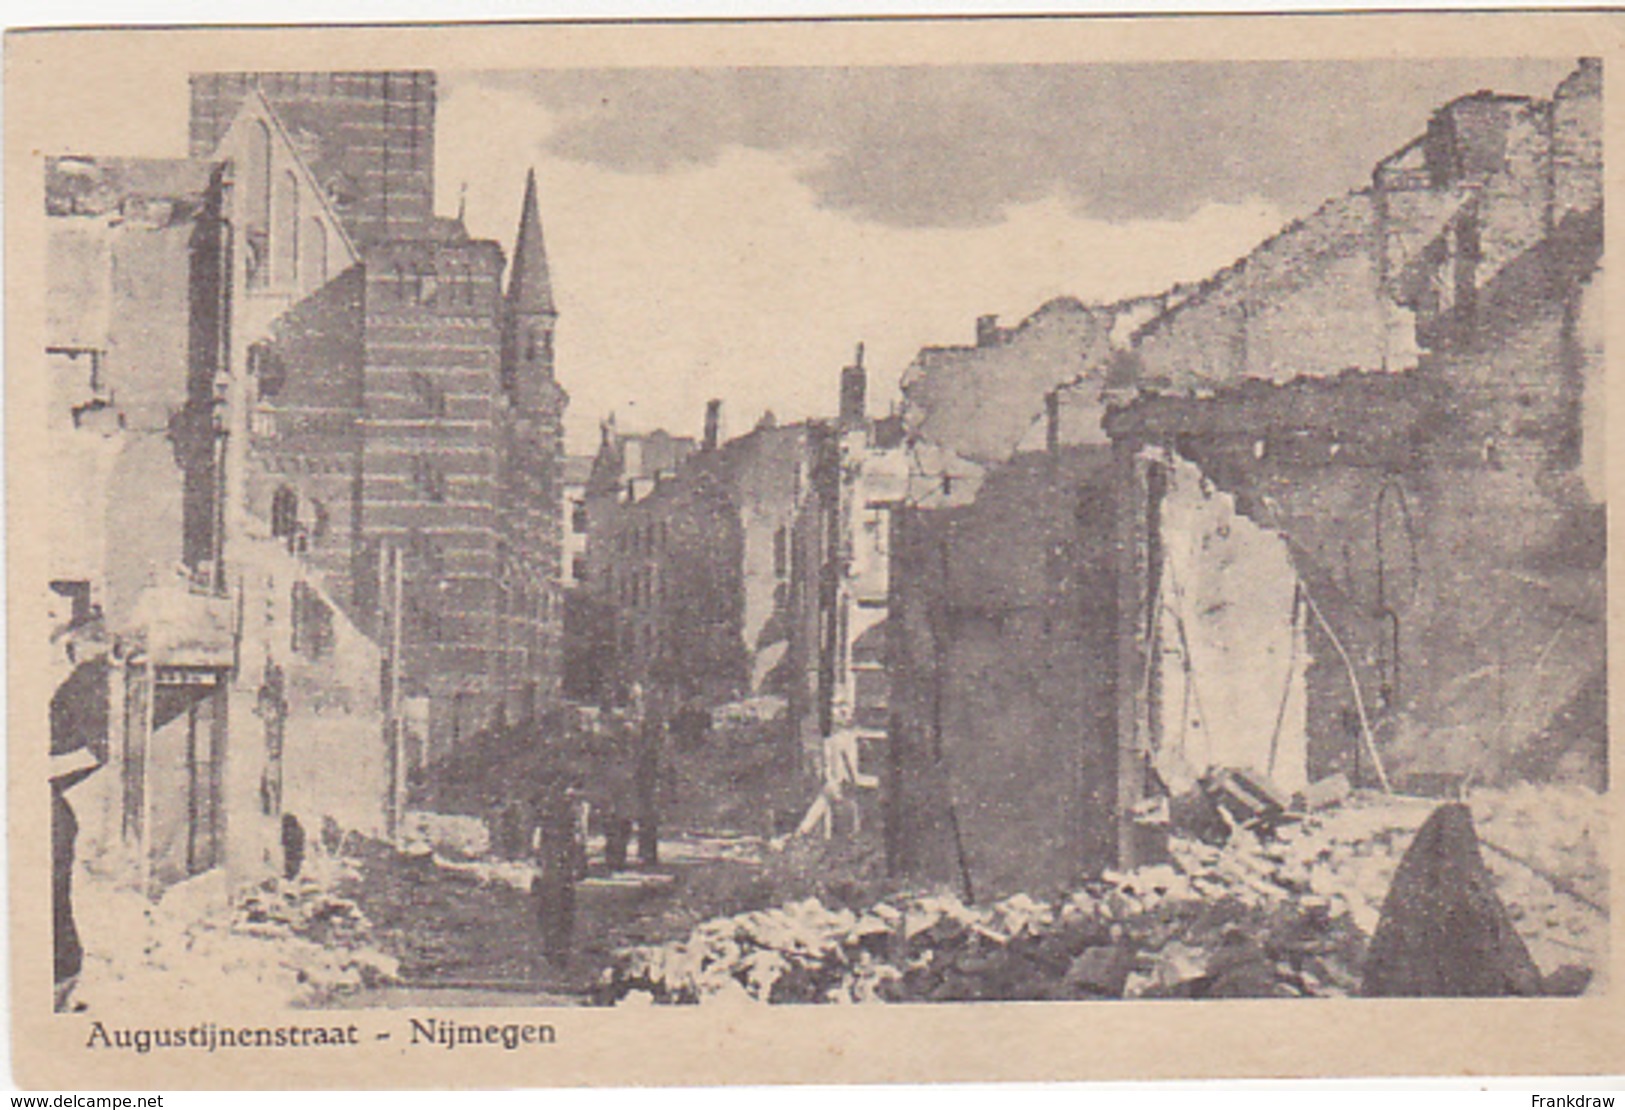 Postcard - Nijmegen - Augustijnenstraat - After Bombardment  (WWII) - VG - Unclassified